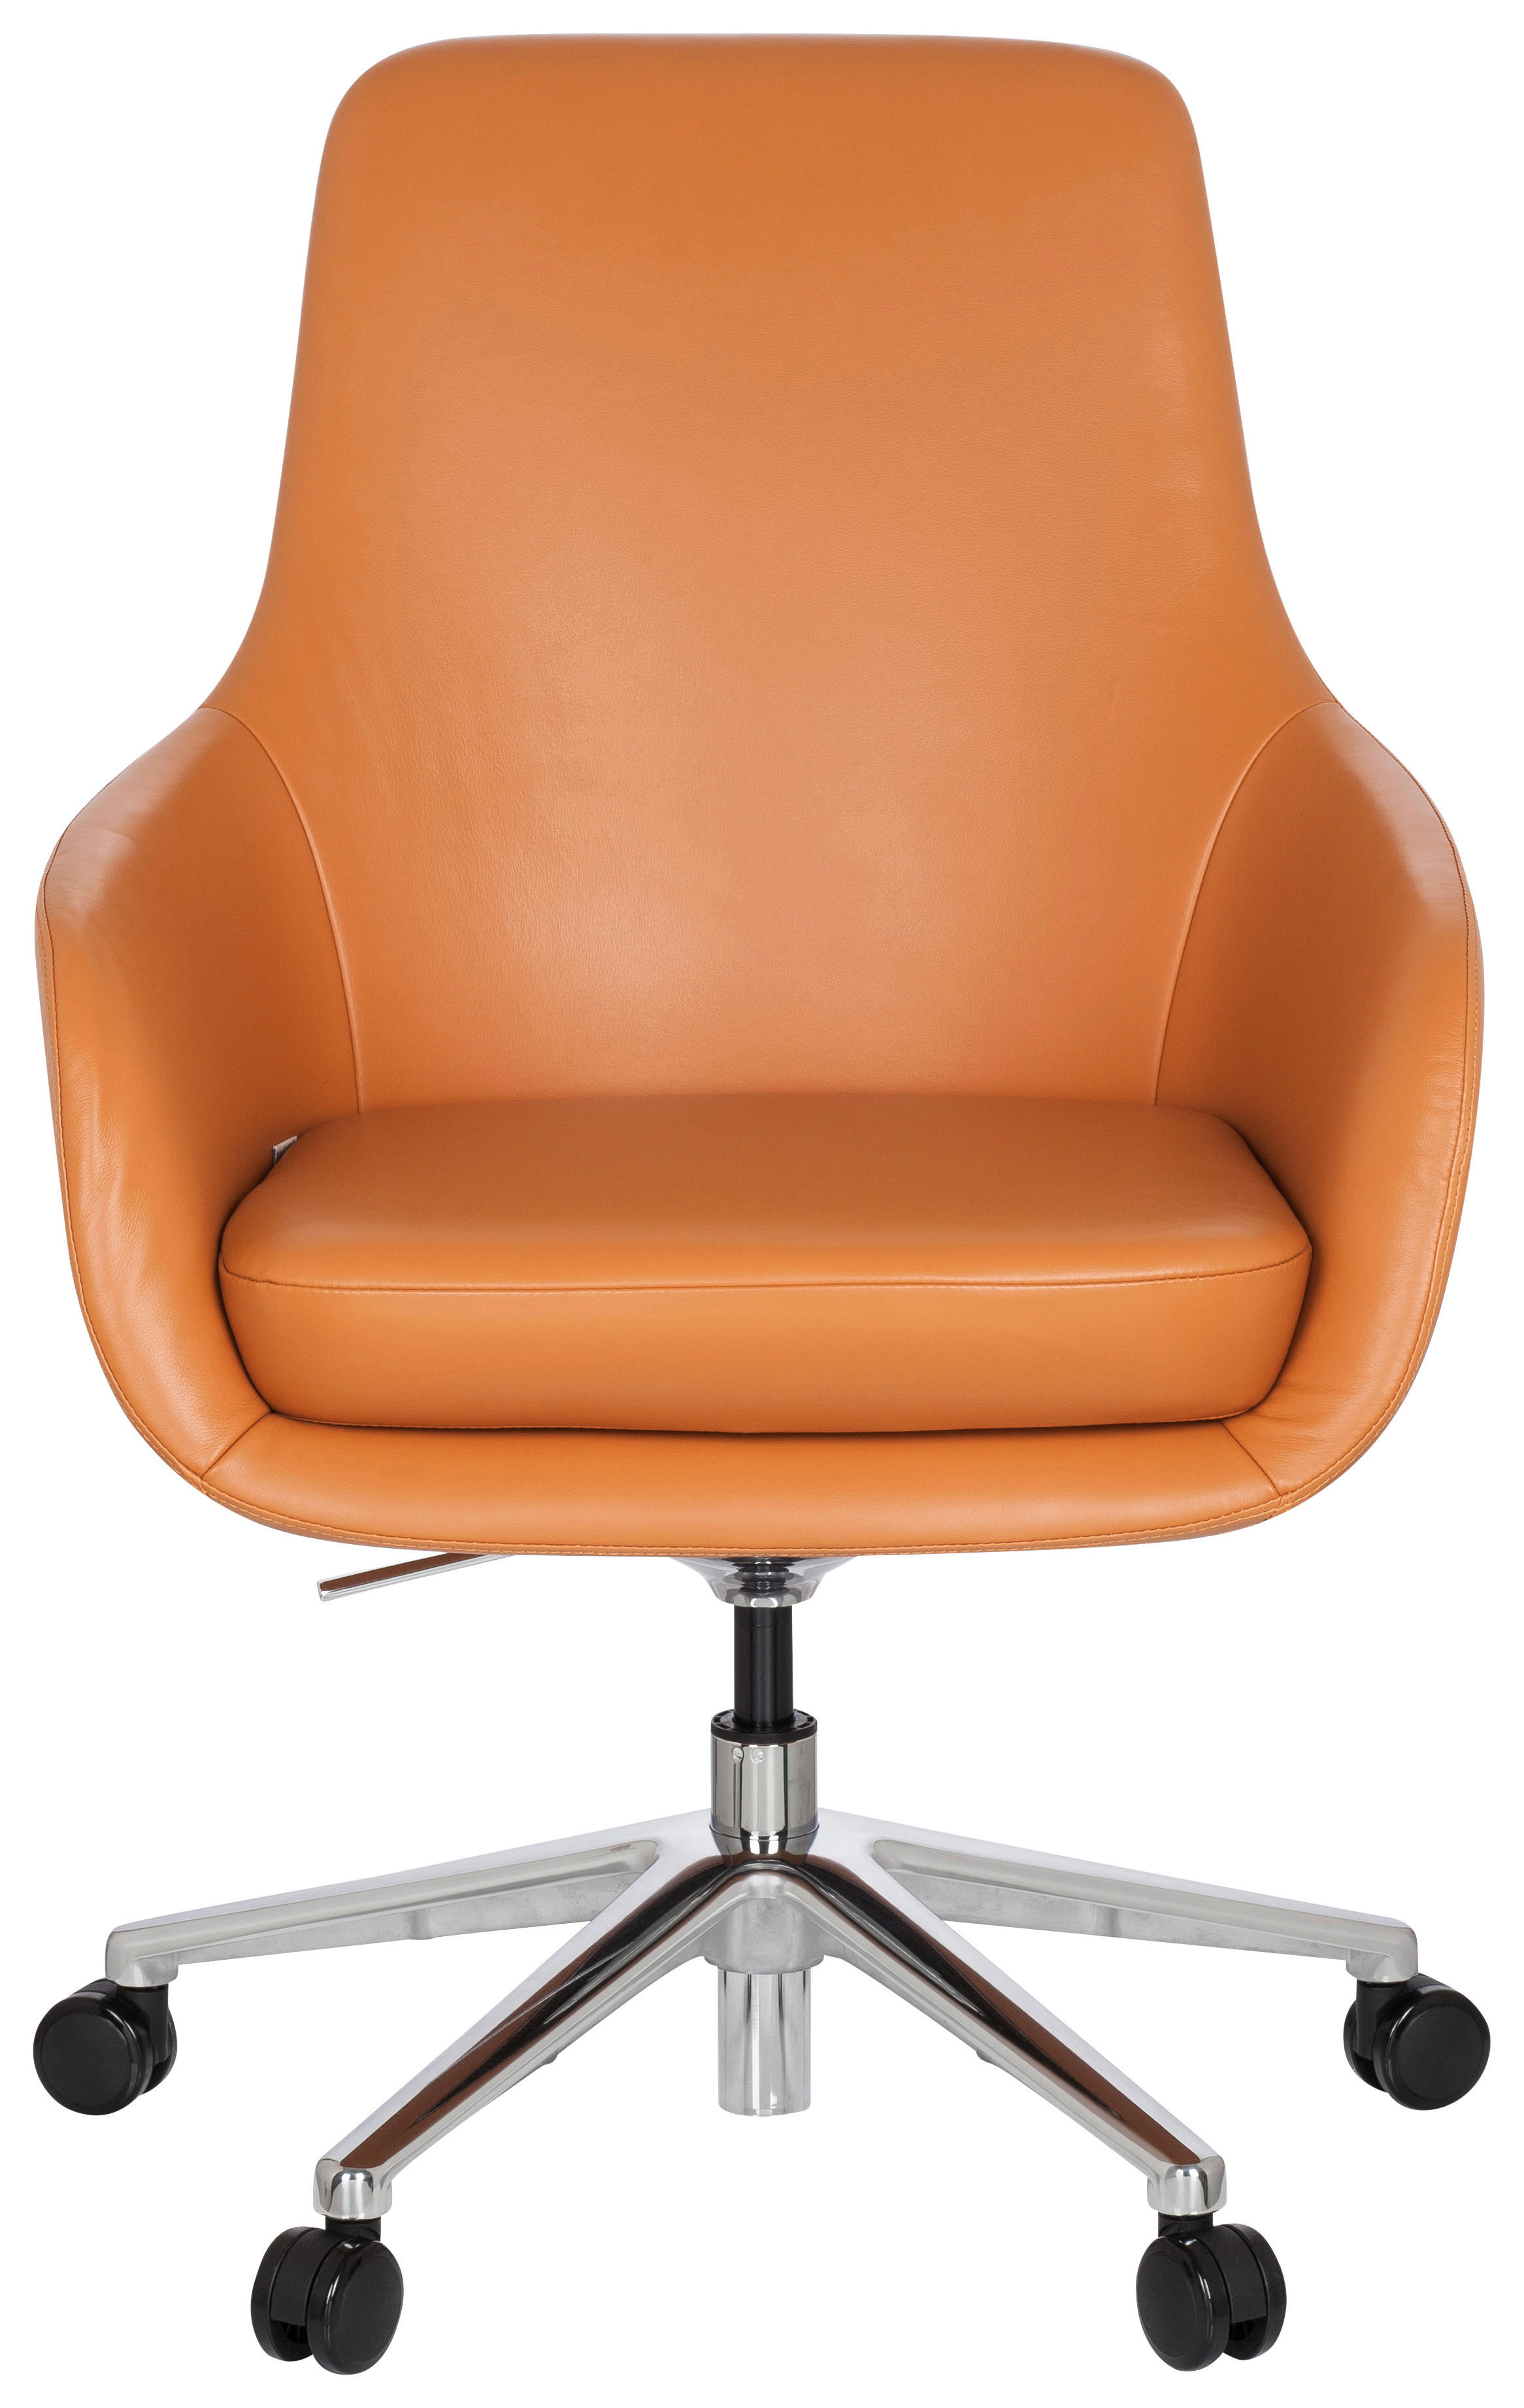 DREHSTUHL Lederlook Orange  - Alufarben/Orange, MODERN, Leder/Kunststoff (65/104/54cm) - MID.YOU